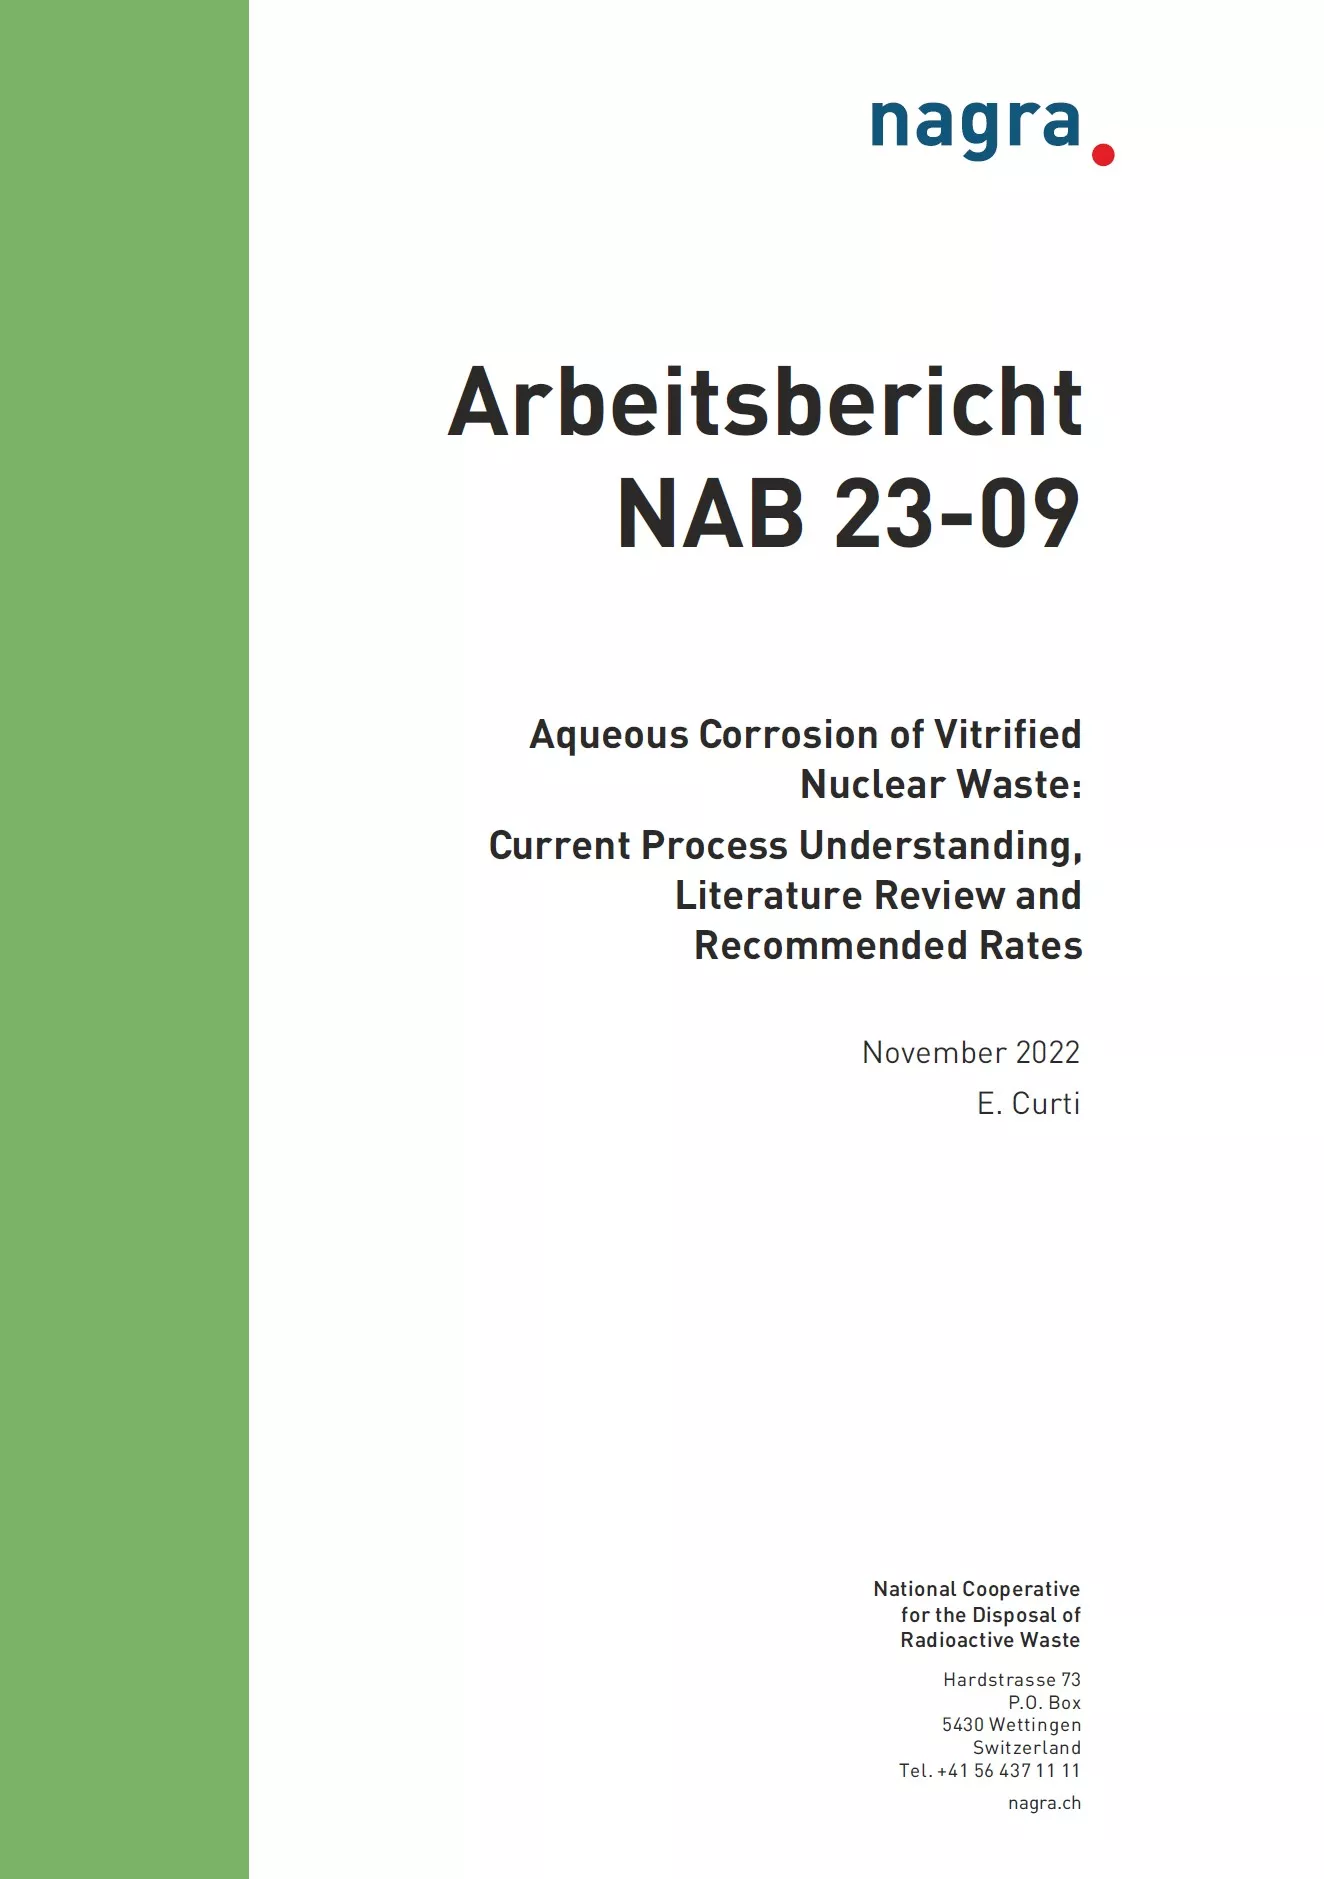 nab-23-09